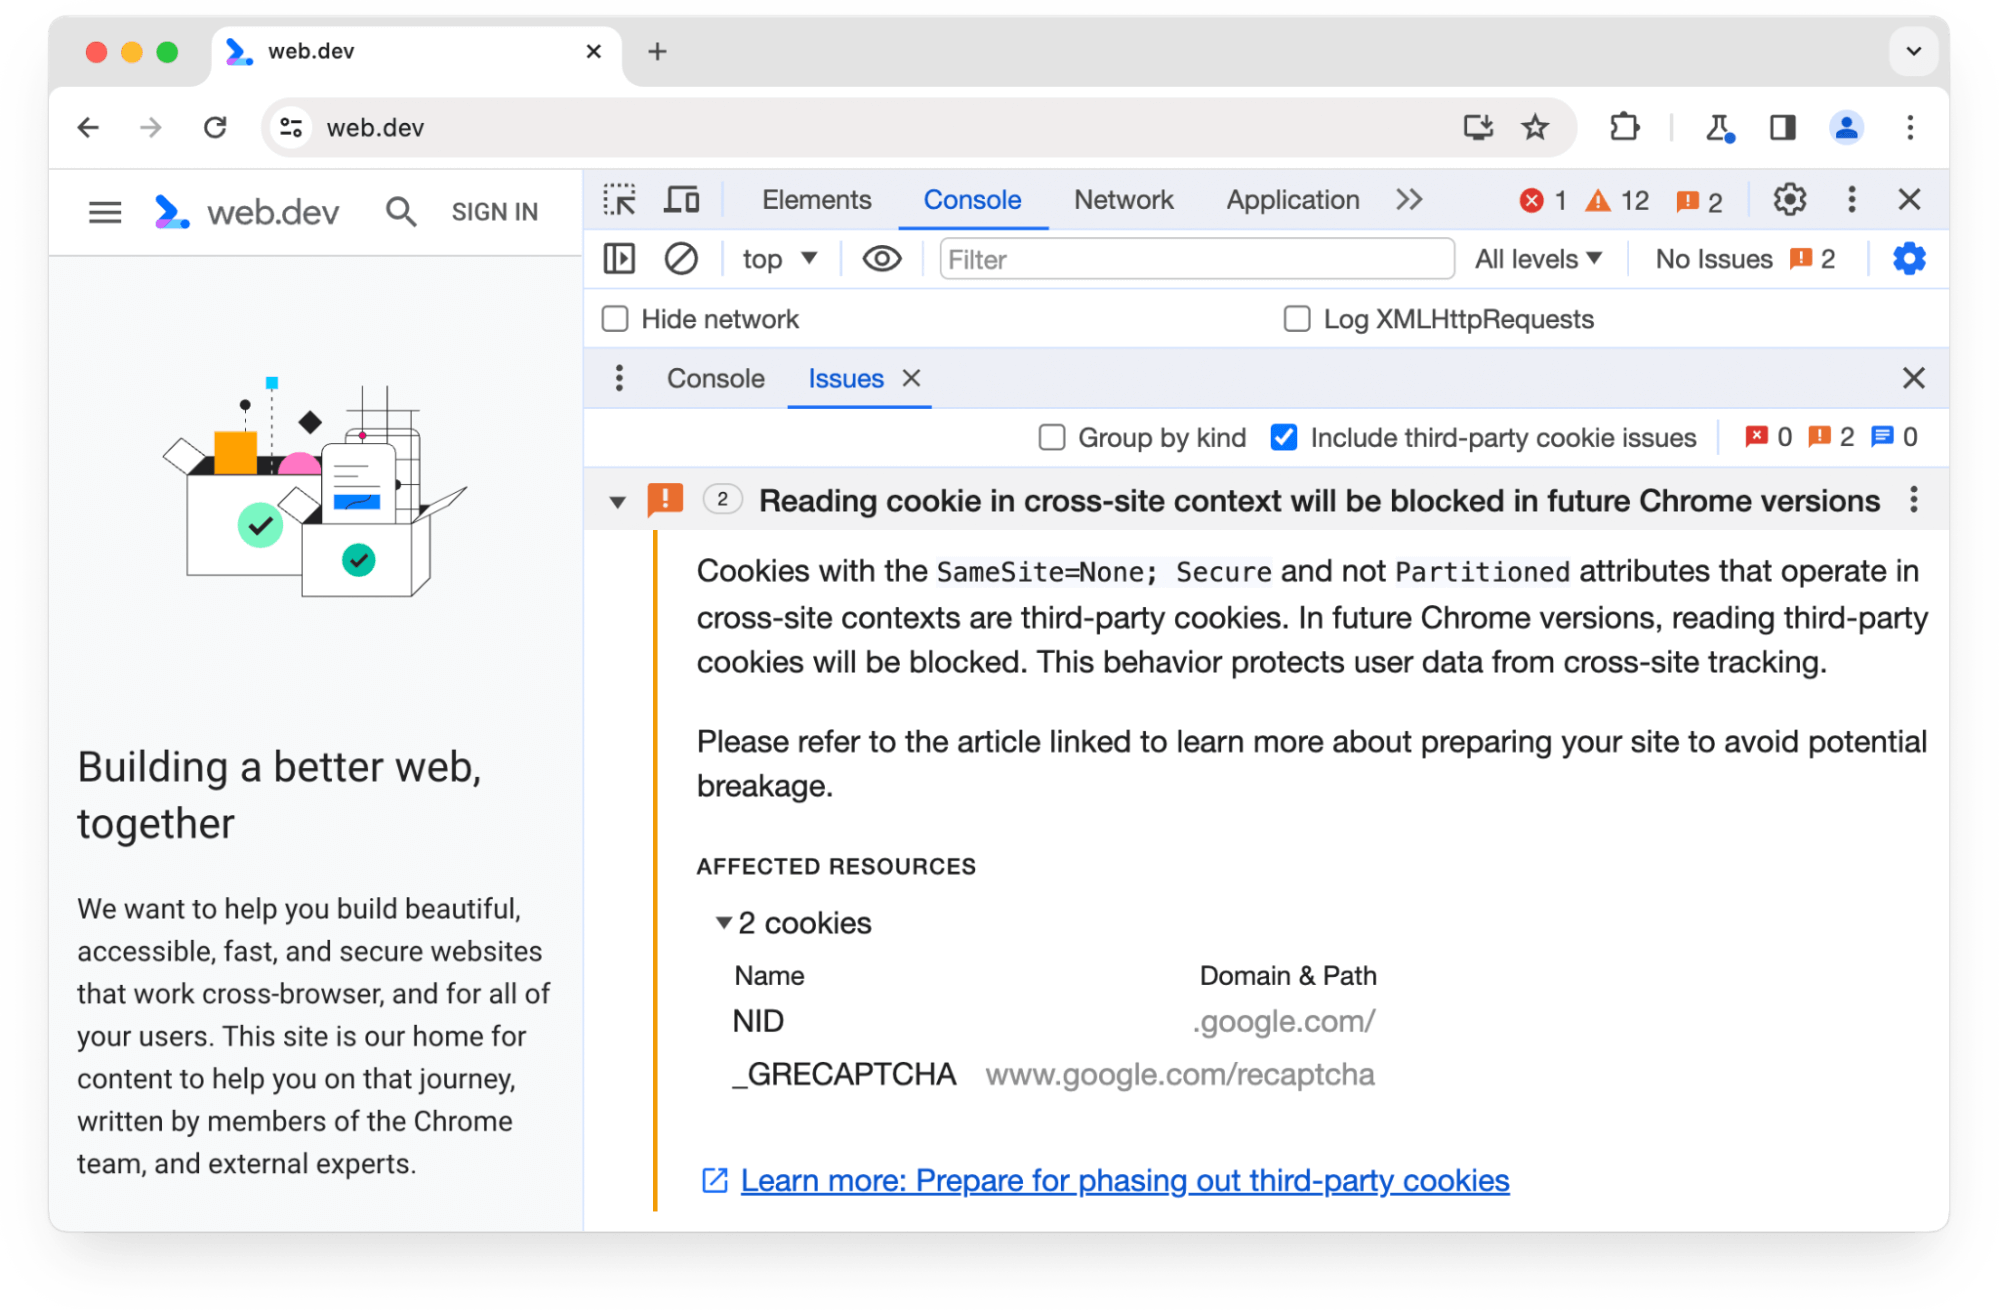 แผงคำเตือนเกี่ยวกับแผงปัญหาเกี่ยวกับเครื่องมือสำหรับนักพัฒนาเว็บใน Chrome เกี่ยวกับคุกกี้ของบุคคลที่สาม 2 รายการซึ่งจะถูกบล็อกใน Chrome เวอร์ชันต่อๆ ไป